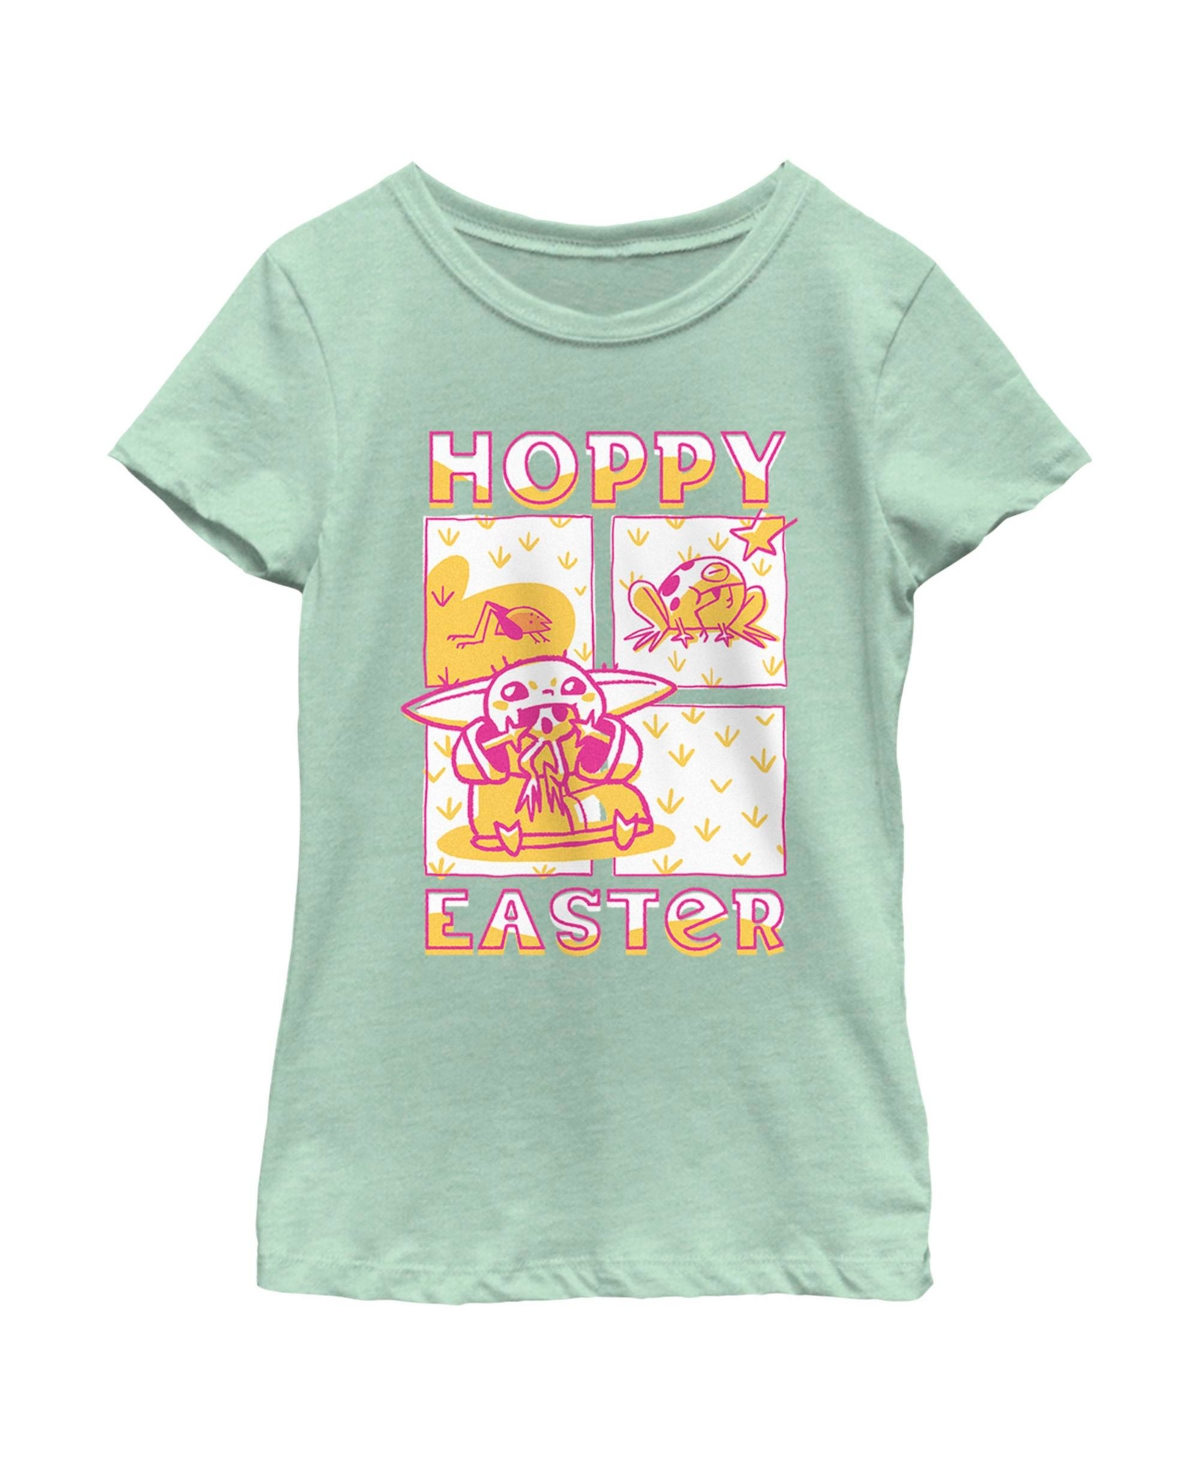 Disney Lucasfilm Kids' Girl's Star Wars: The Mandalorian Grogu Hoppy Easter Child T-shirt In Mint